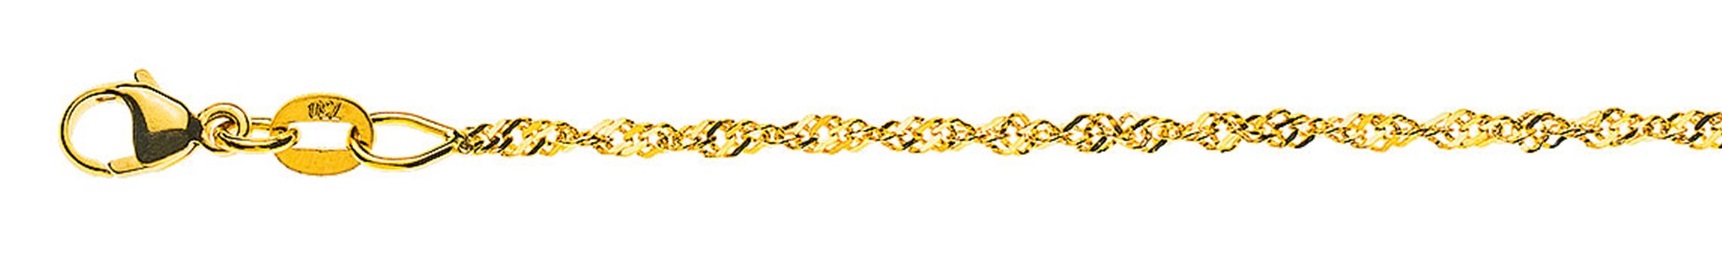 AURONOS Prestige Halskette Gelbgold 18K Singapurkette 38cm 1.5mm